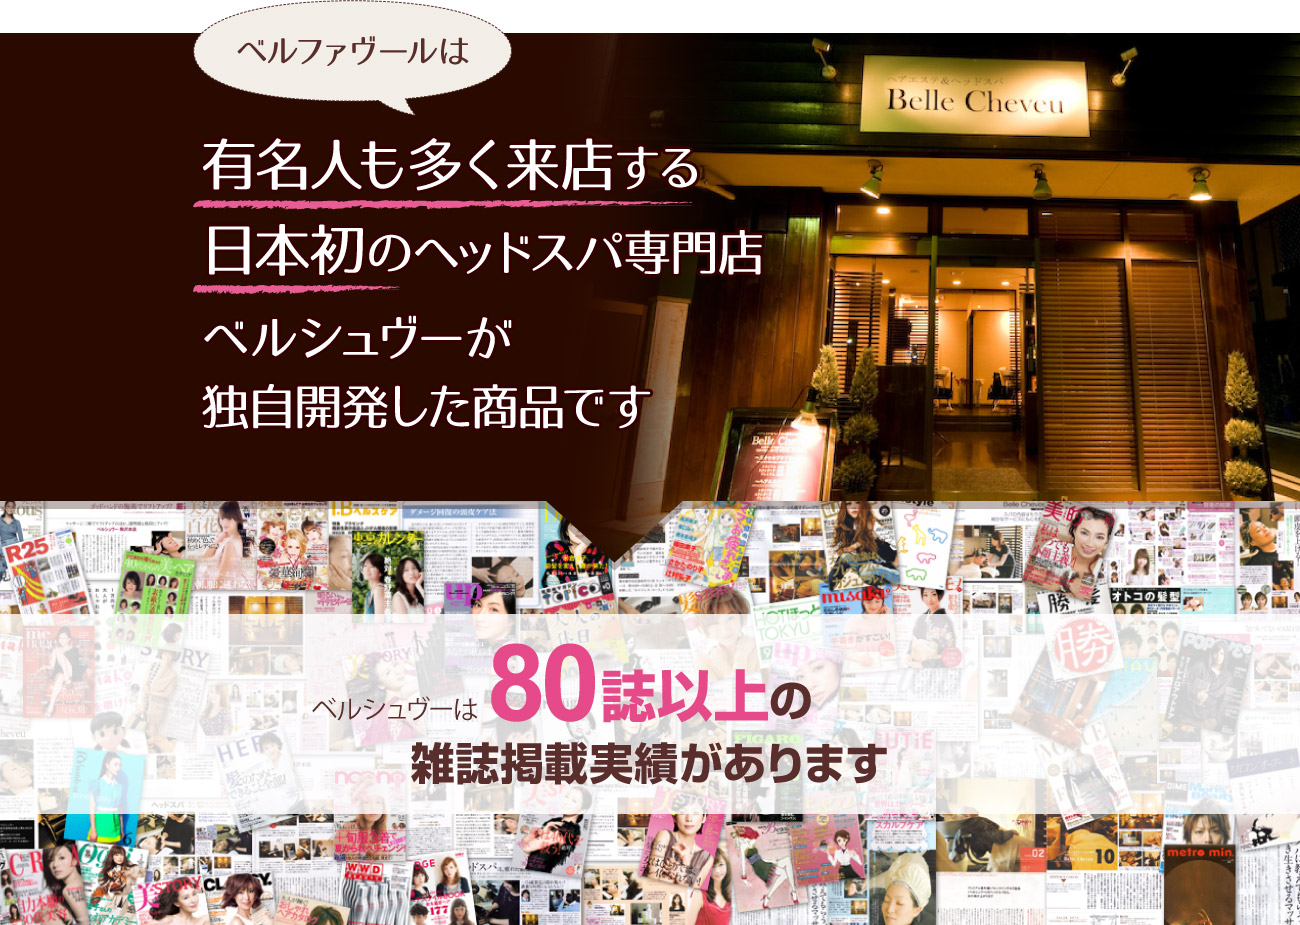 ベルファヴールは有名人も多く来店する日本初のヘッドスパ専門店ベルシュヴーが独自開発した商品です。ベルシュヴーは80誌以上の雑誌掲載実績があります。